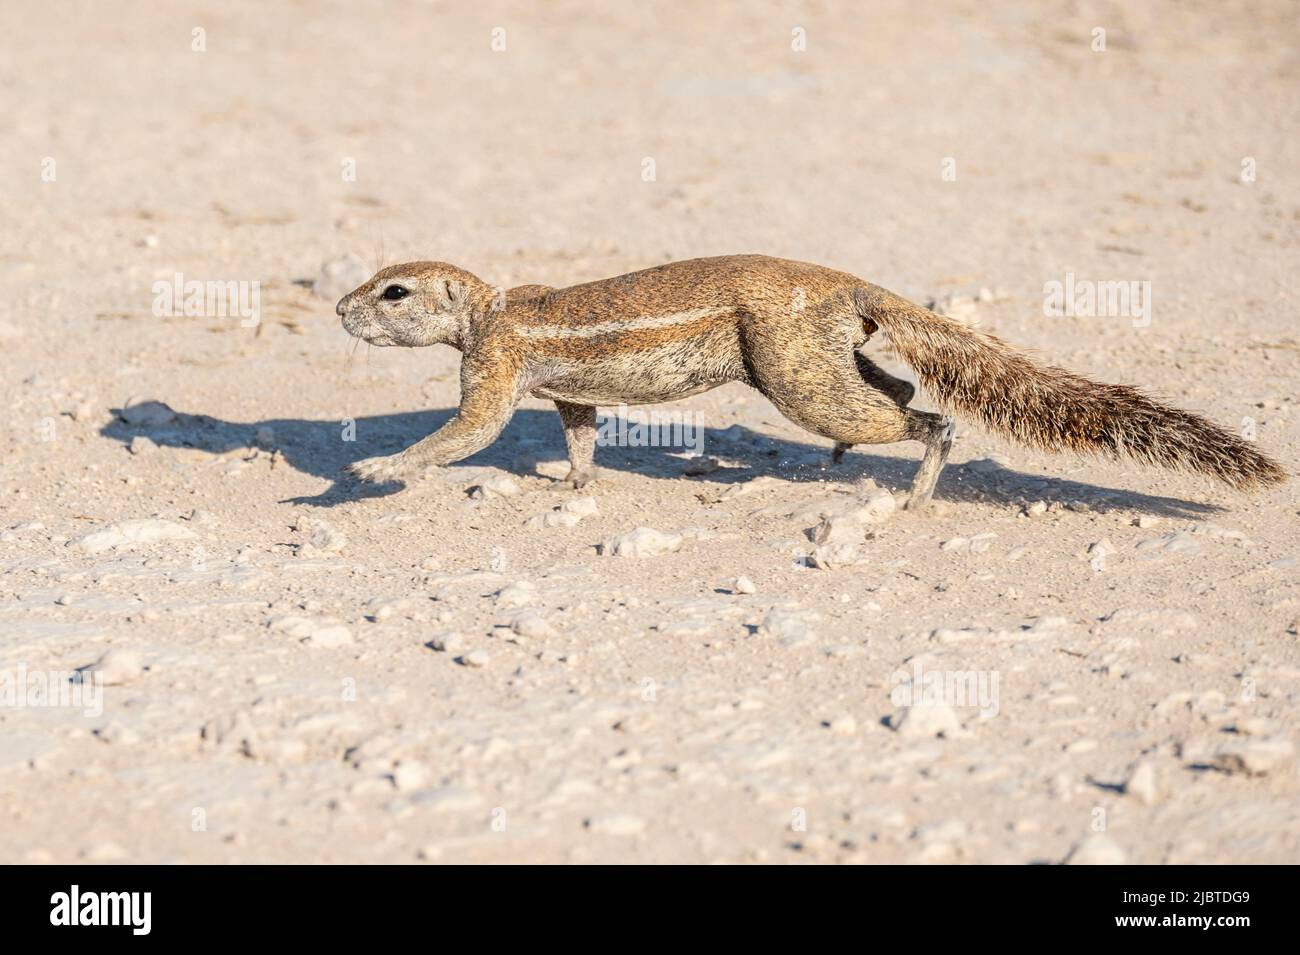 Namibie, région de Kunene, Parc national d'Etosha, écureuil du Cap (Xerus inauris) Banque D'Images